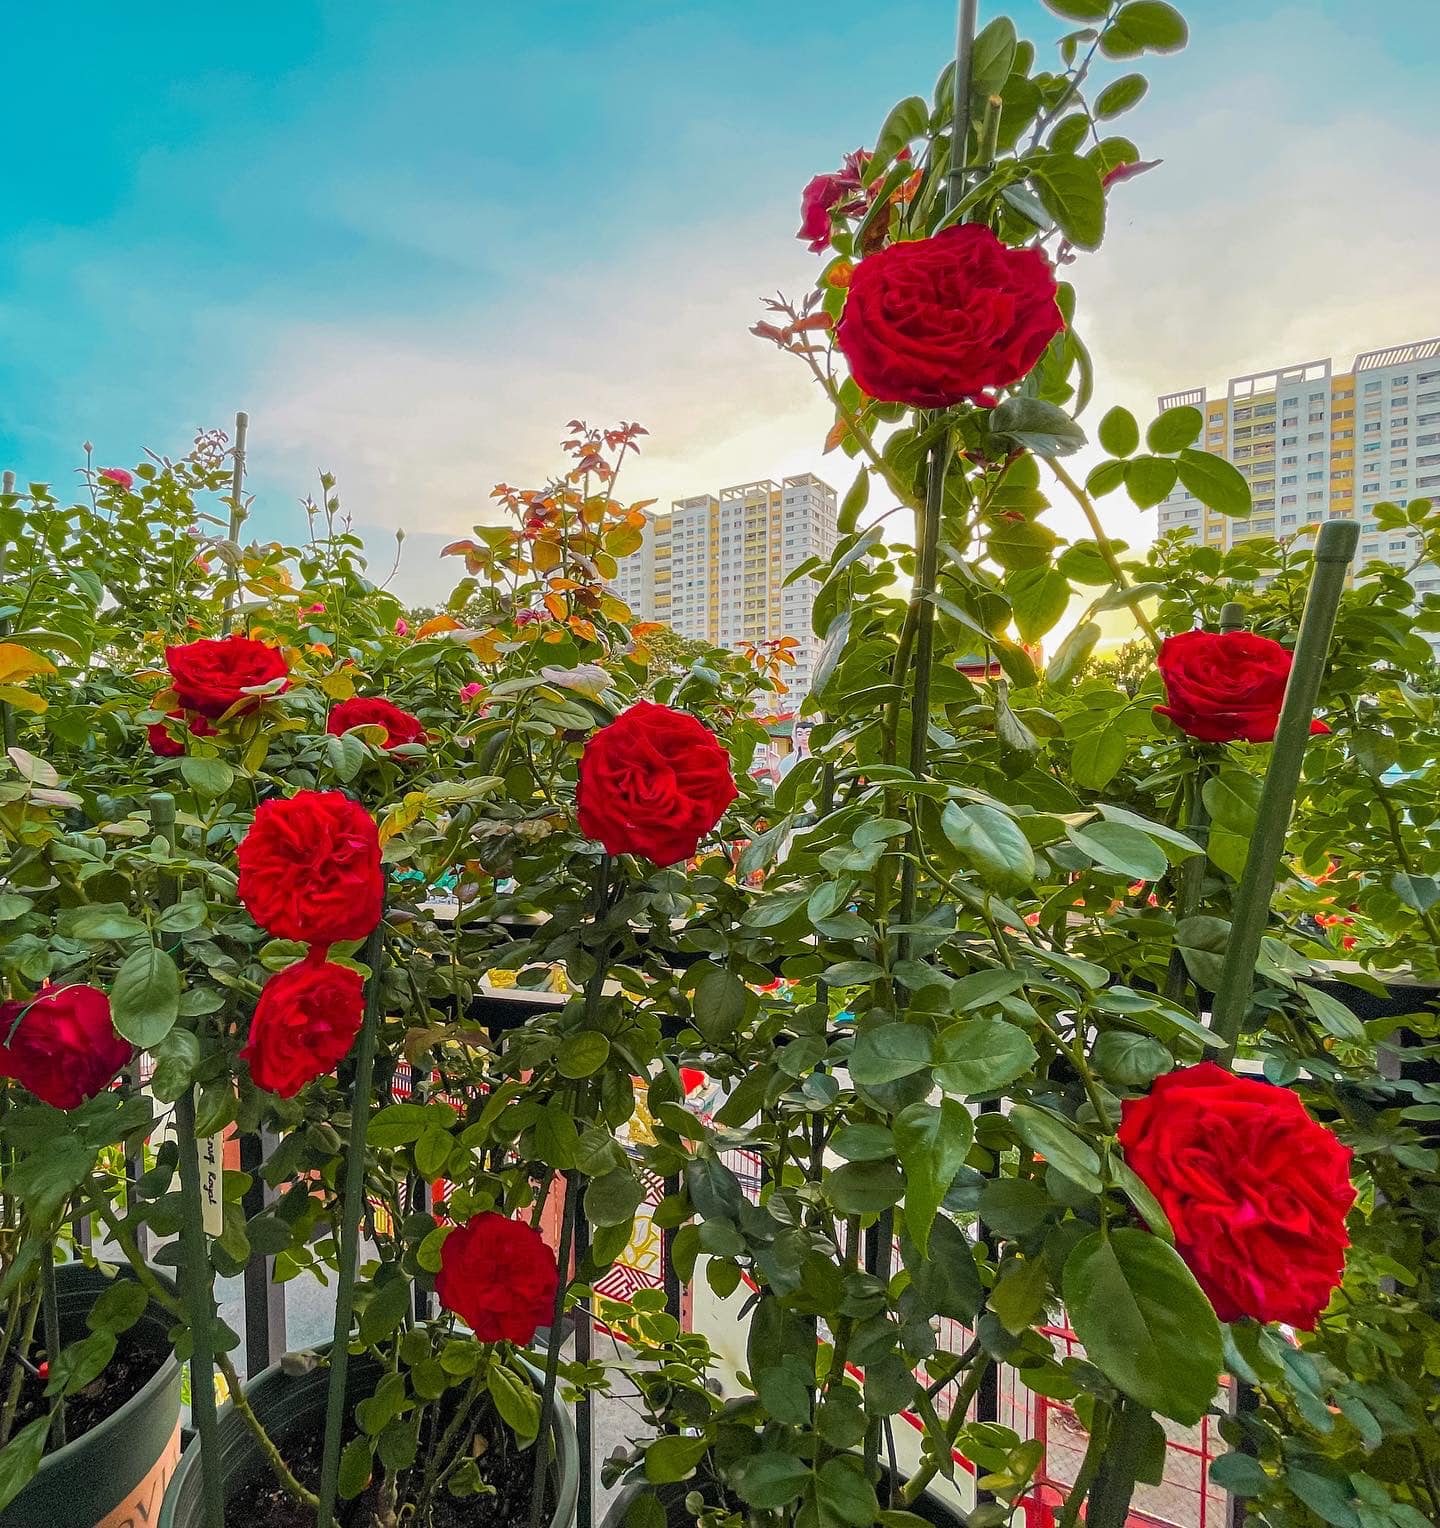 Khu vườn hoa hồng đẹp ngây ngất trên sân thượng ở TP HCM - Ảnh 6.